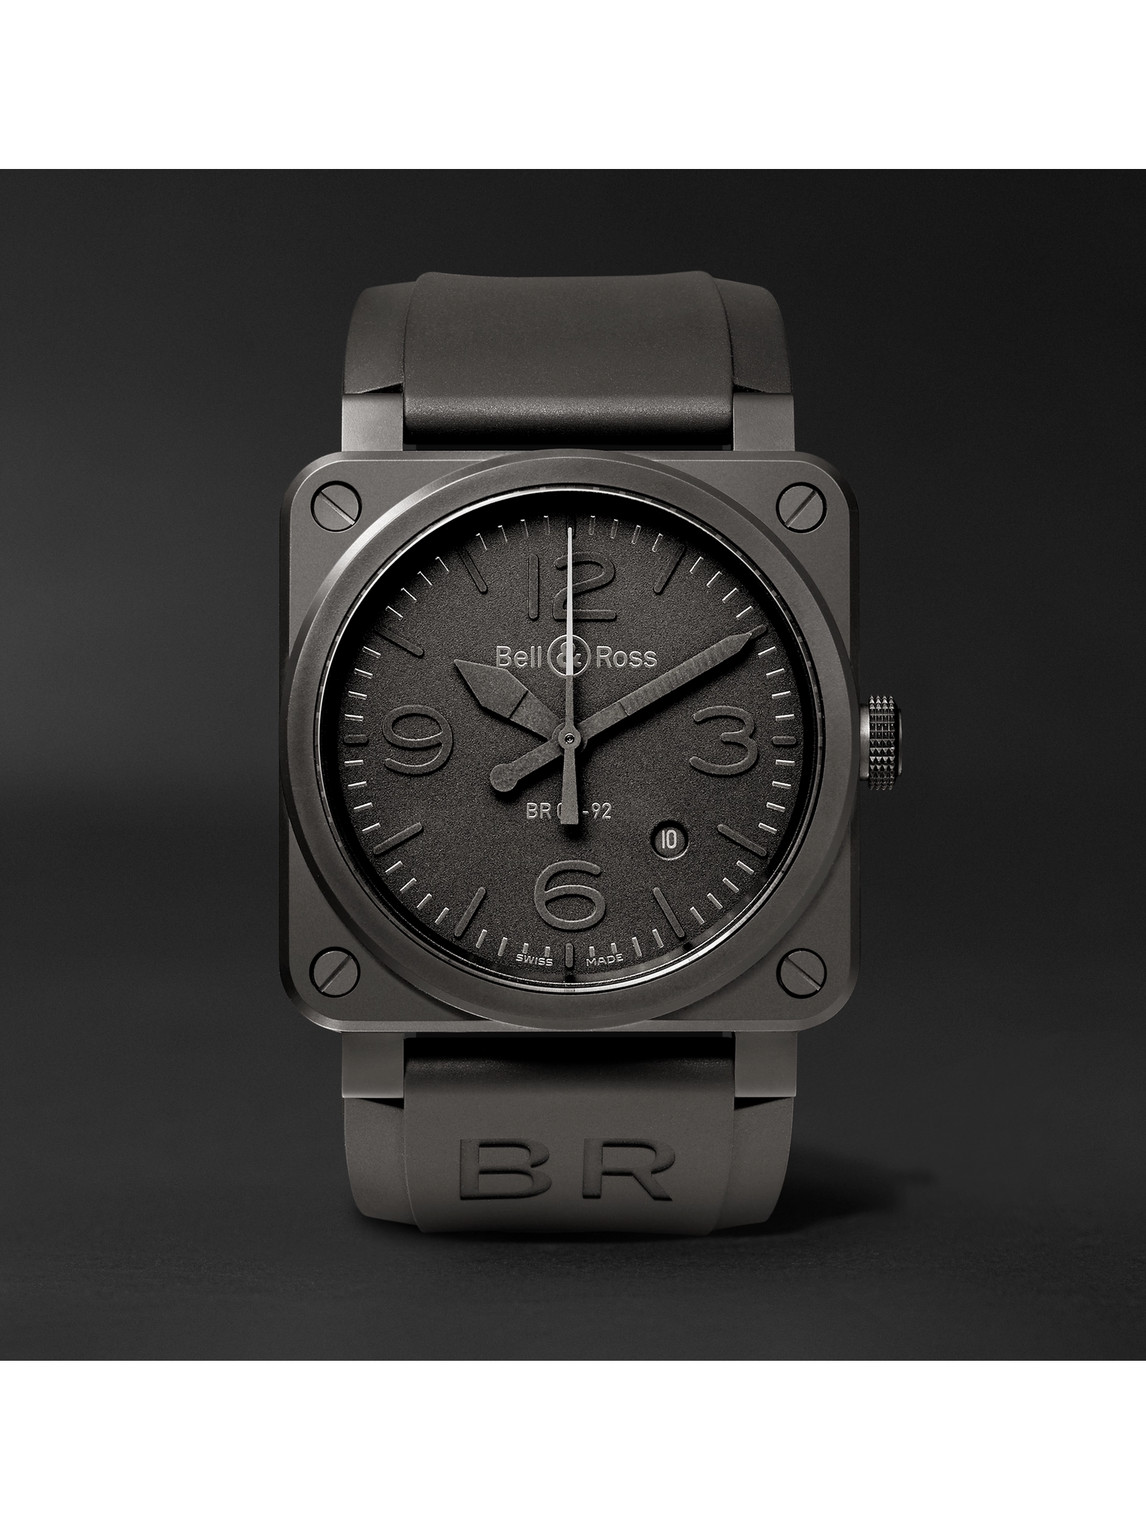 Phantom Automatic 42mm Ceramic and Rubber Watch, Ref. No. BR0392‐PHANTOM‐CE